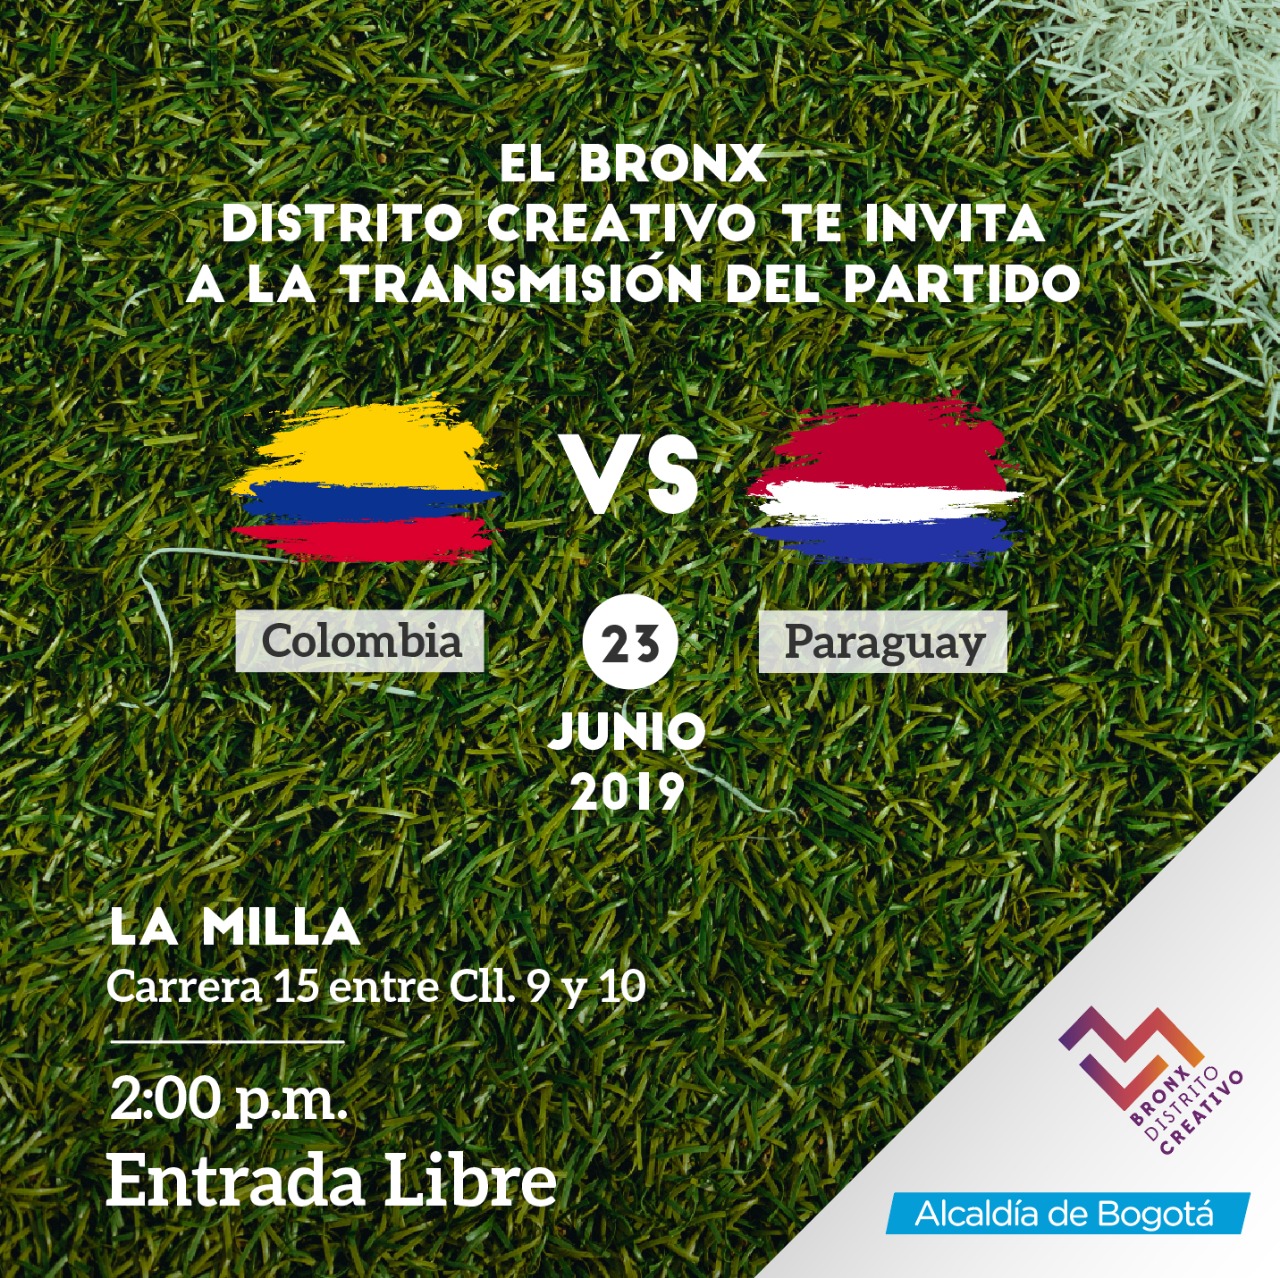 Partido Colombia vs Paraguay en el Bronx Bogota.gov.co